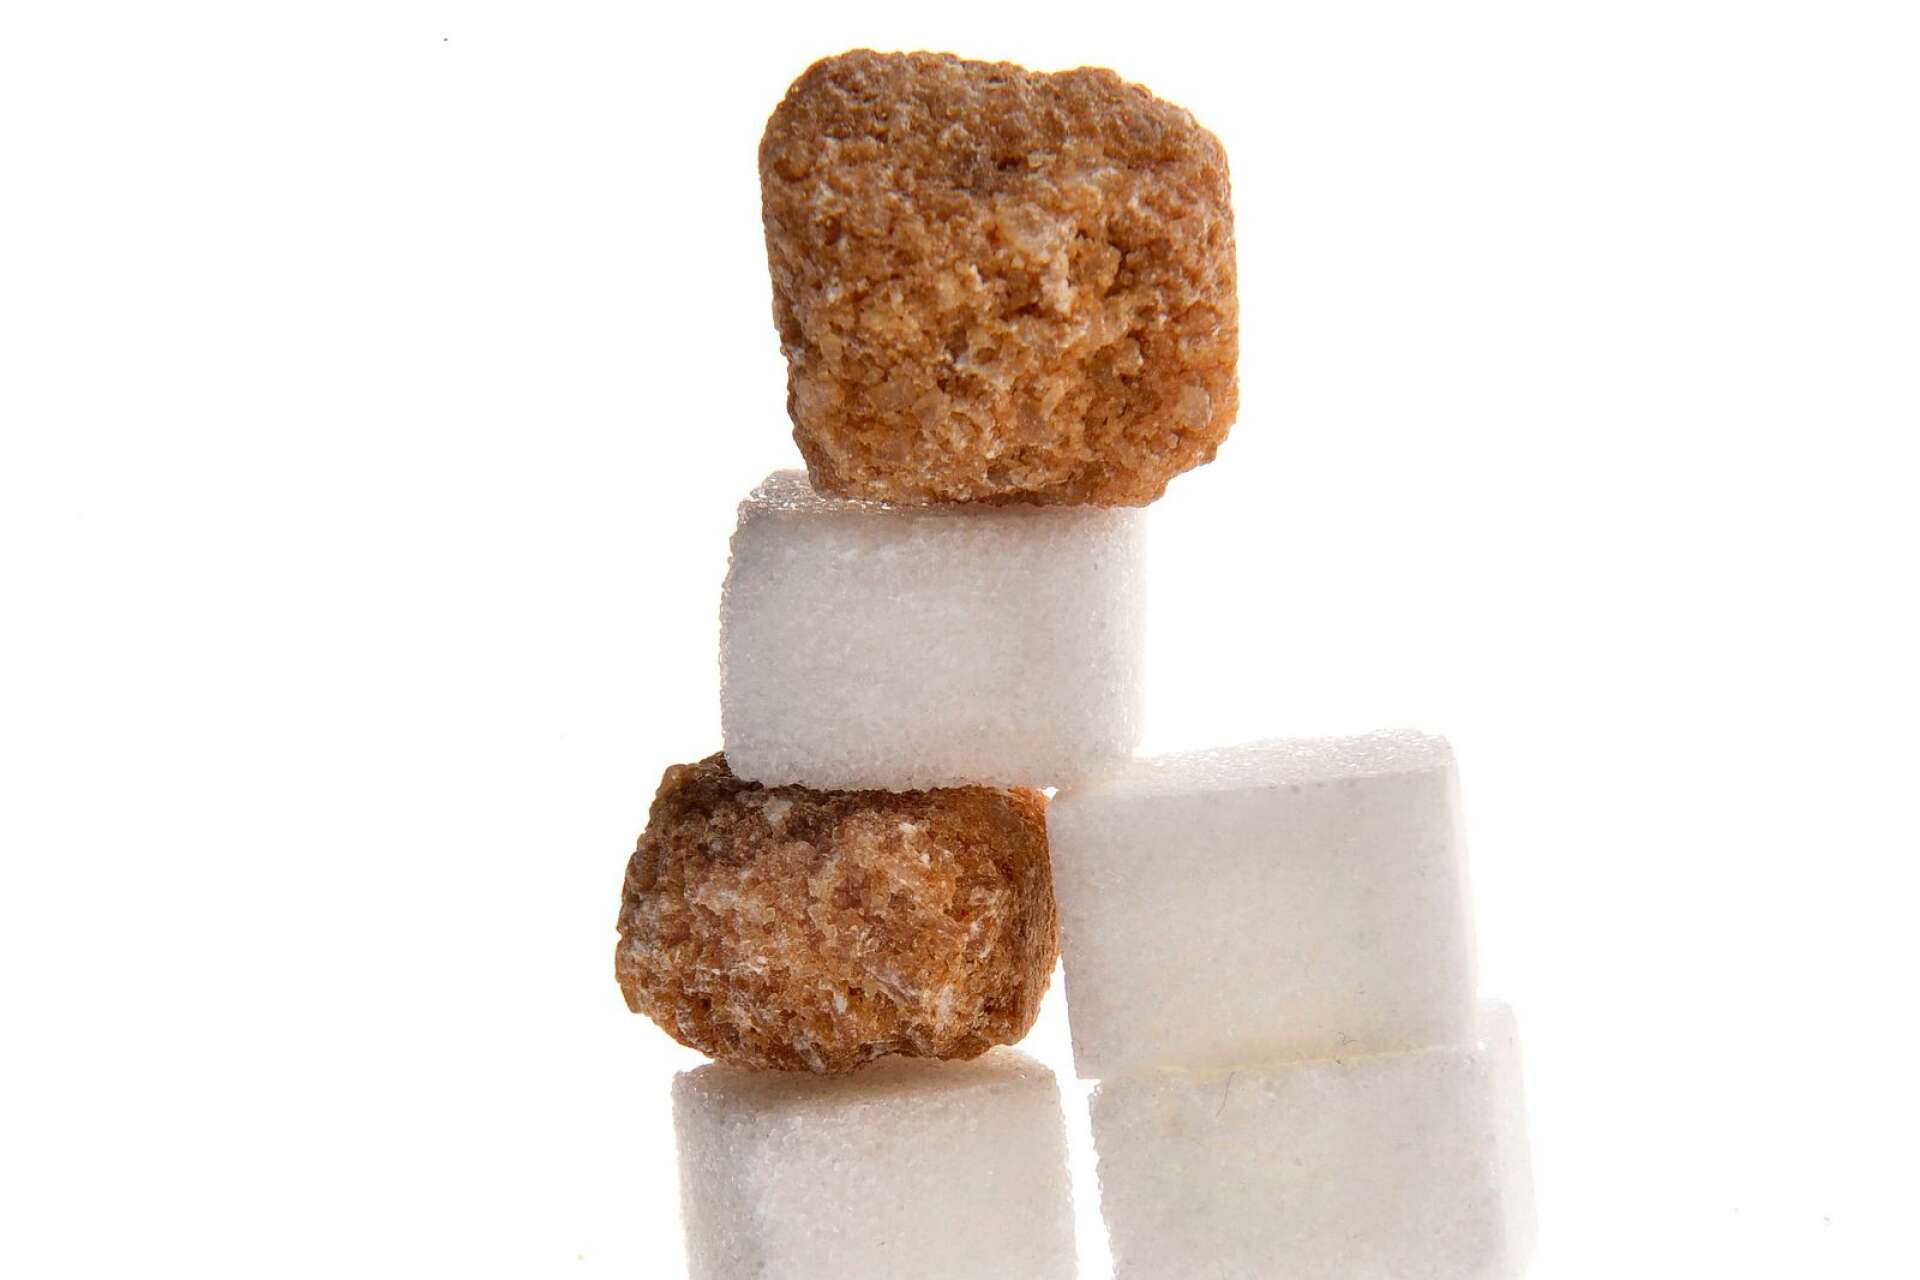 Byrån noterar dock att det ändå är fråga om nymodigheter att ersätta det vita svenska bitsockret med kolonialt brunfärgat oraffinerat socker, skriver Byrån.